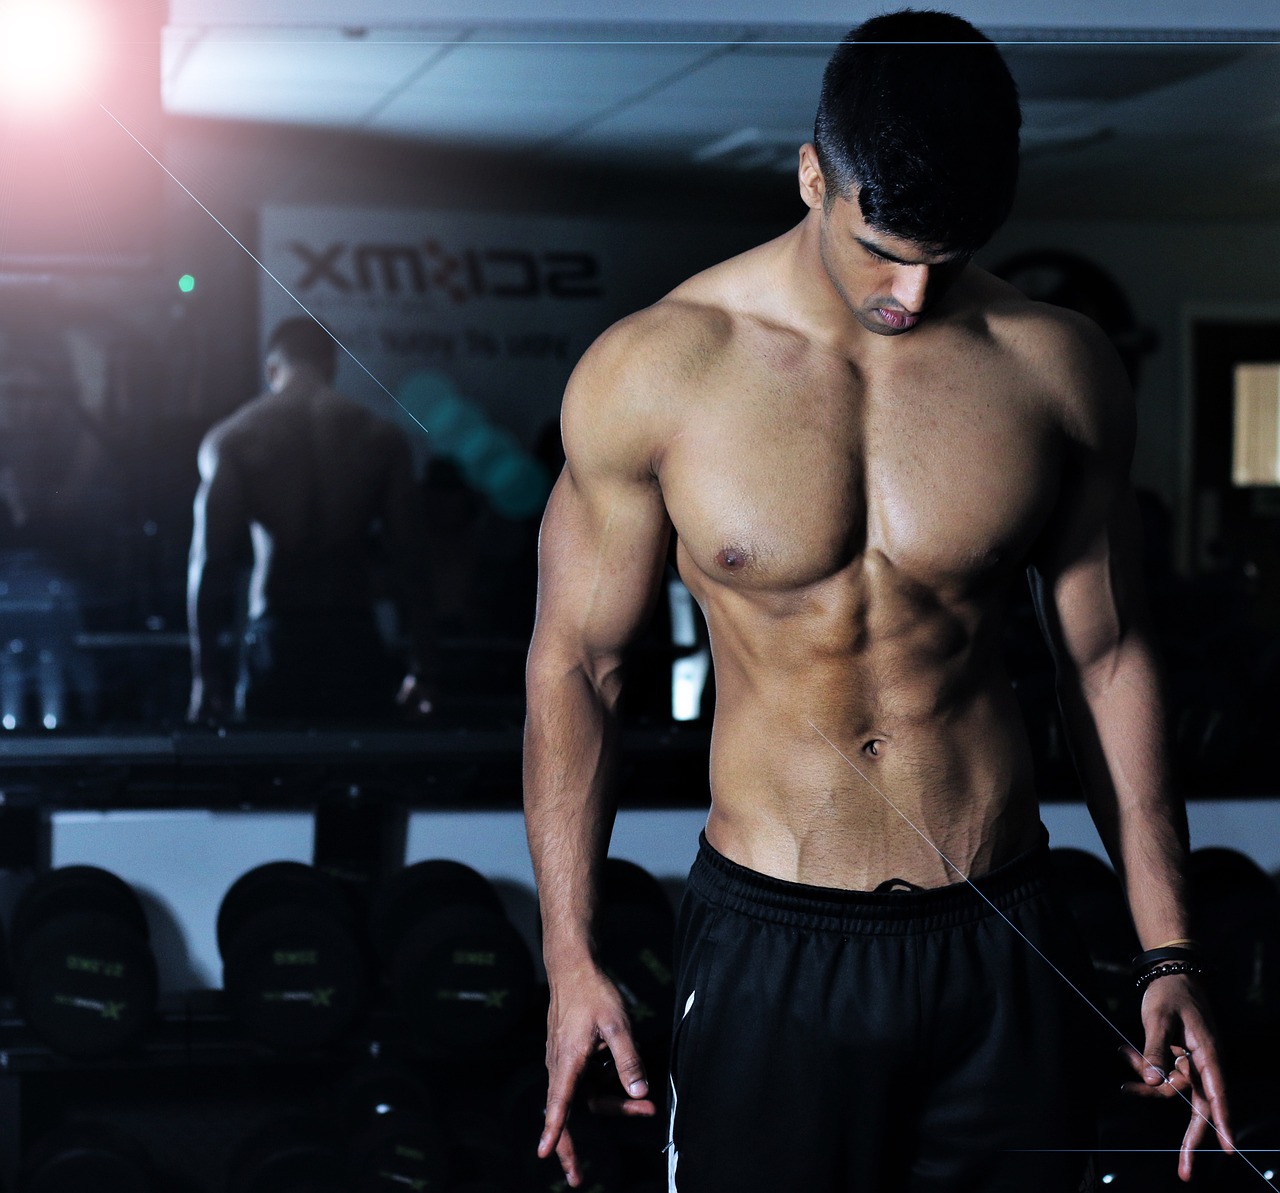 Plan treningowy na wzmocnienie mięśni brzucha: Wypracuj płaski i jędrny brzuch